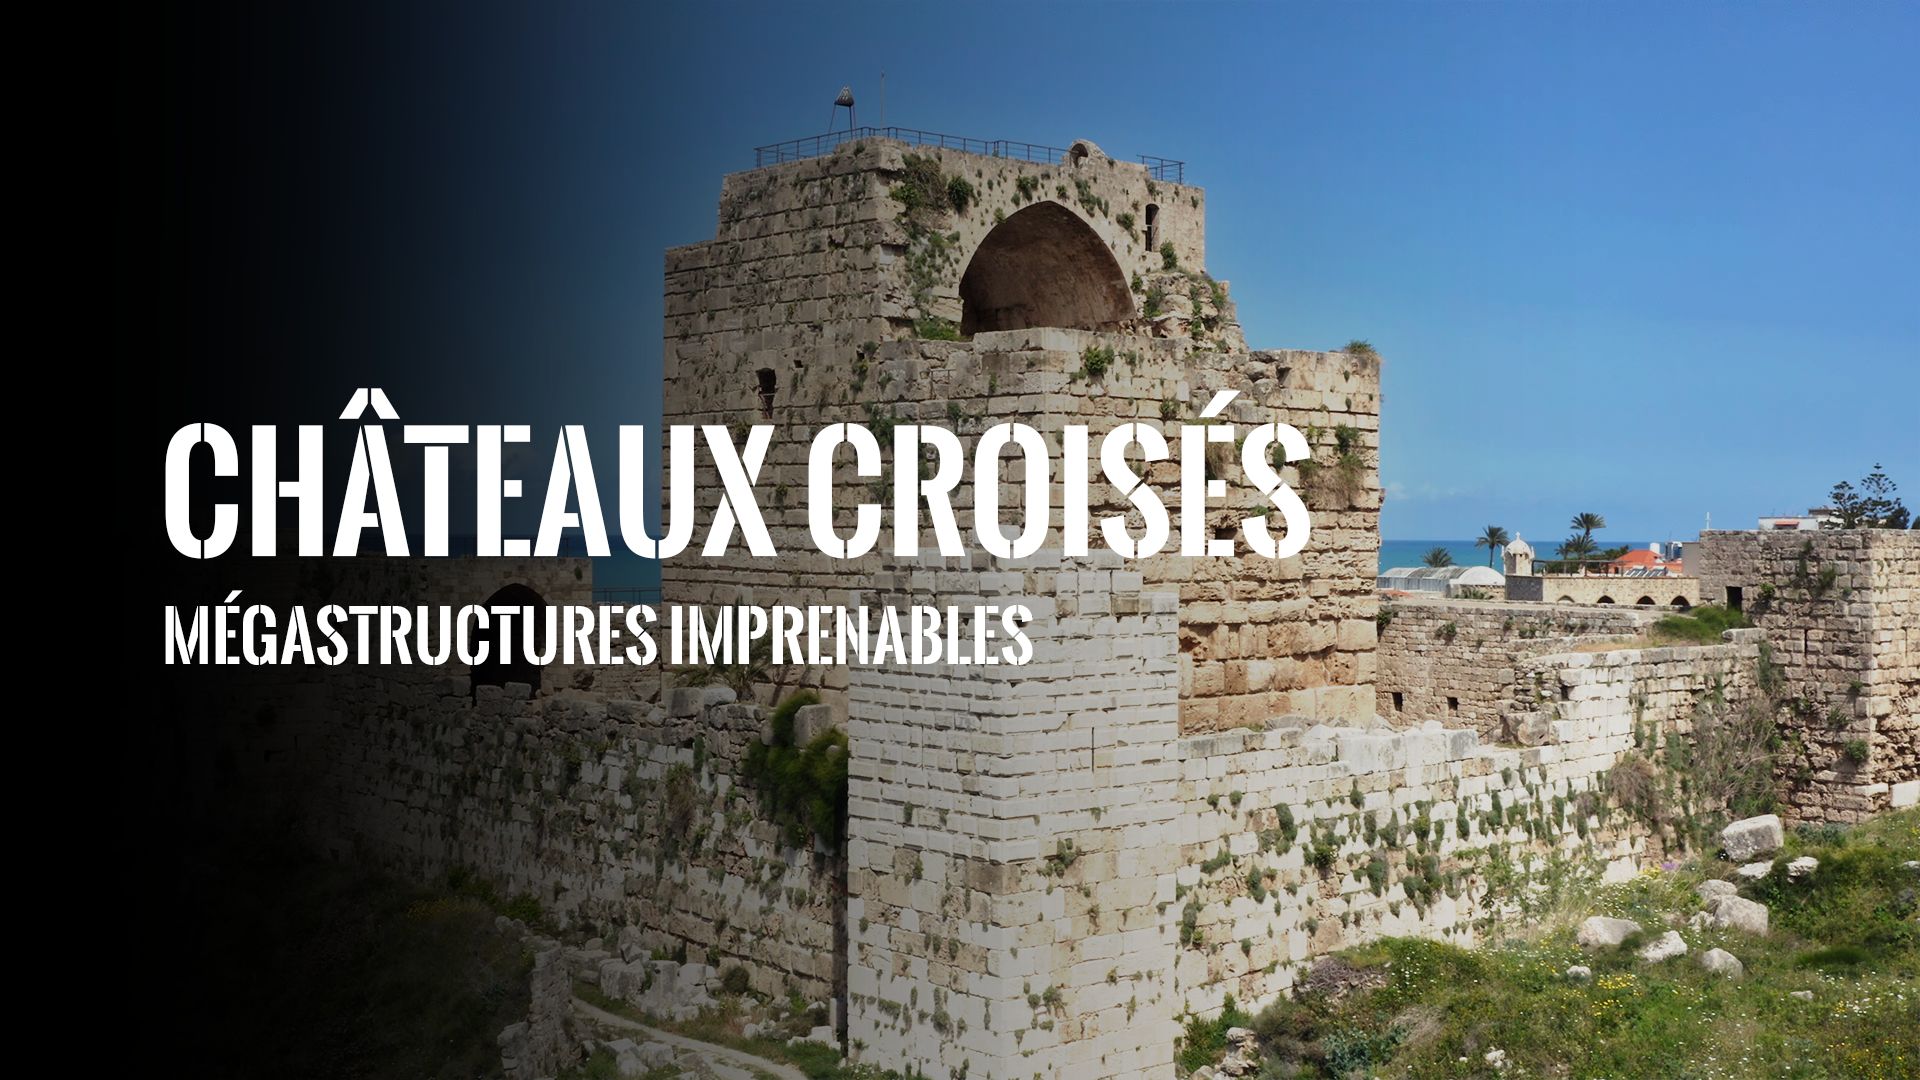 Châteaux croisés, mégastructures imprenables